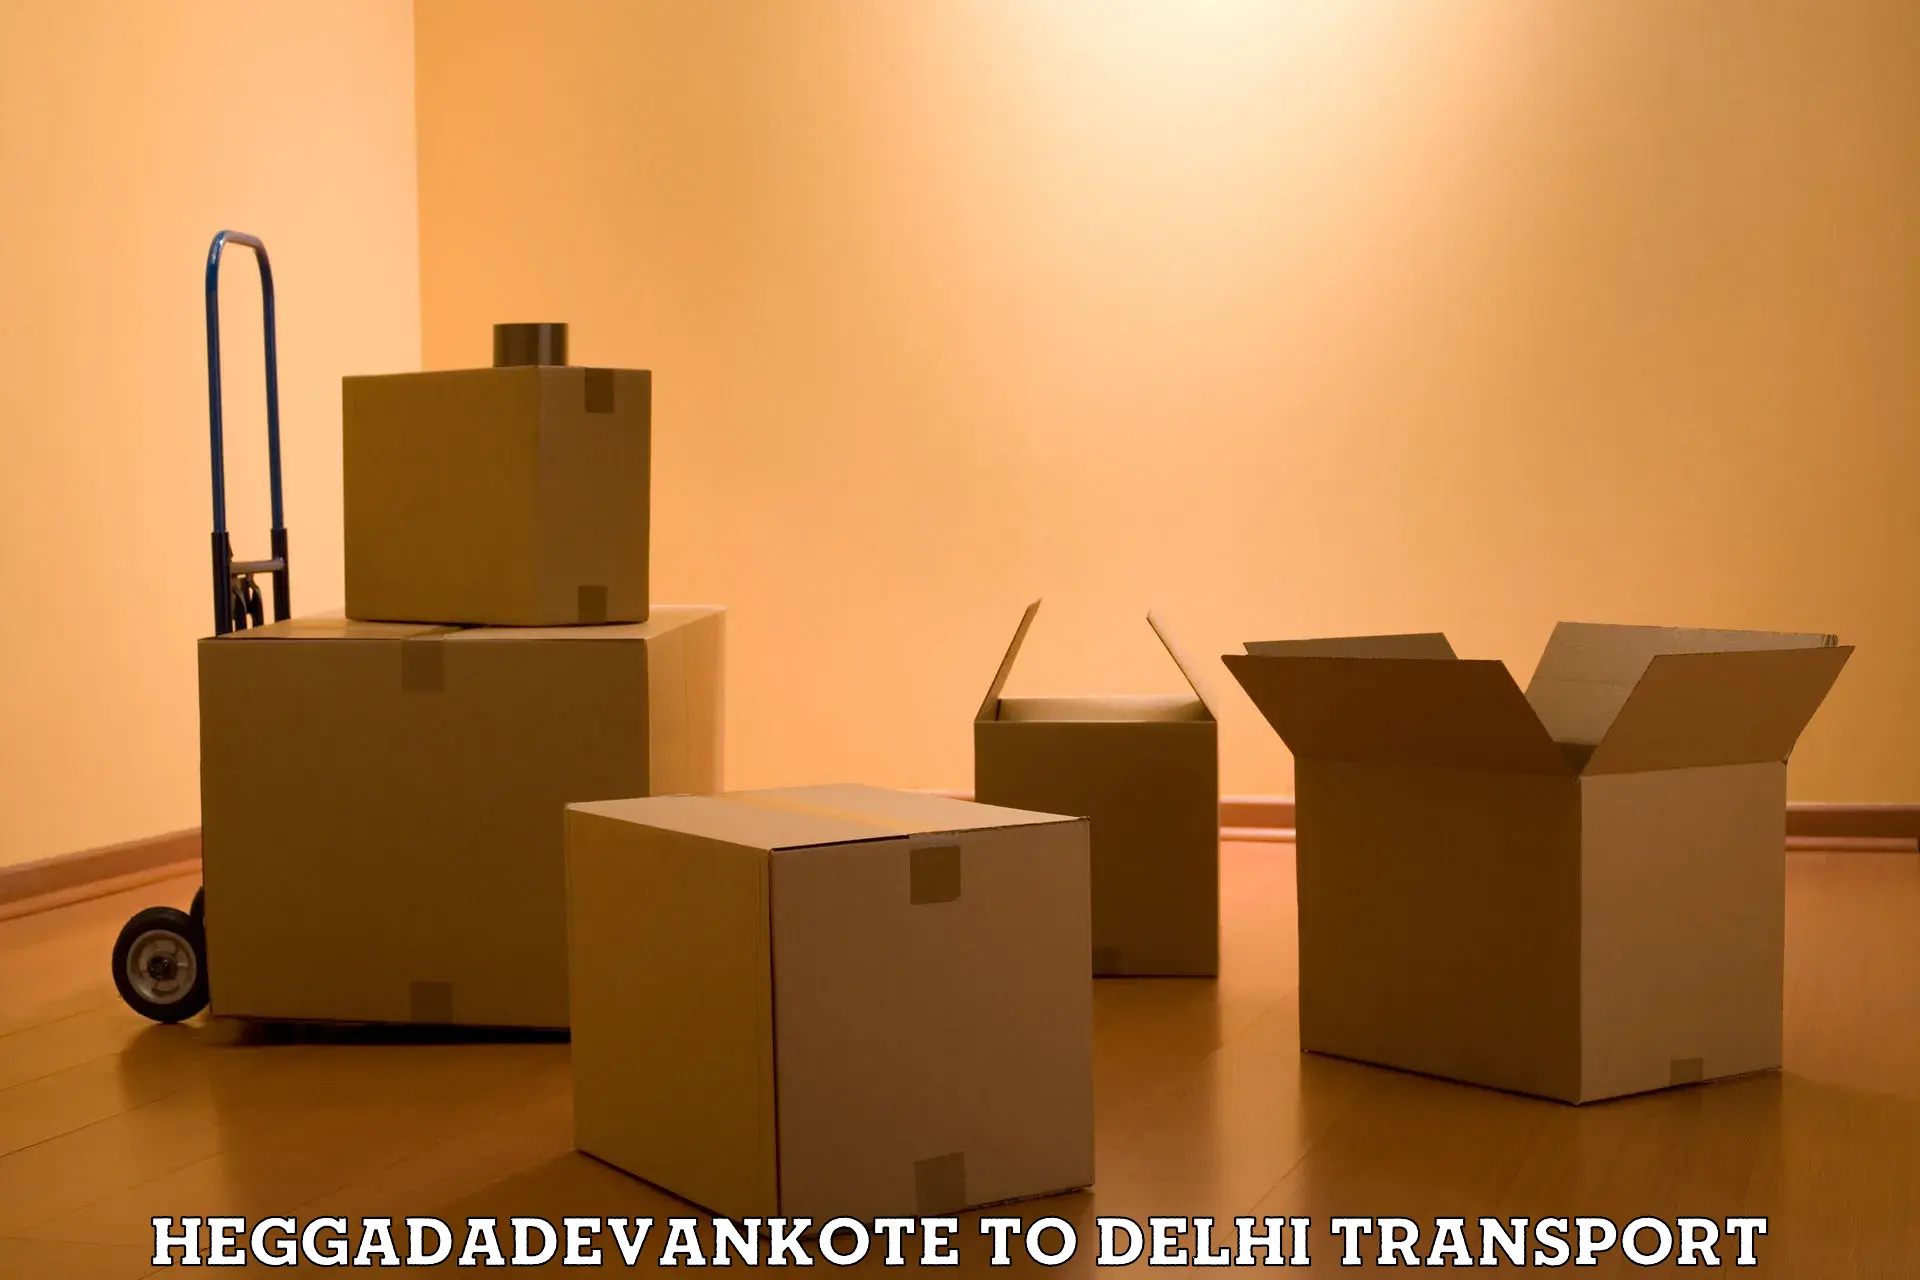 Commercial transport service Heggadadevankote to Jawaharlal Nehru University New Delhi